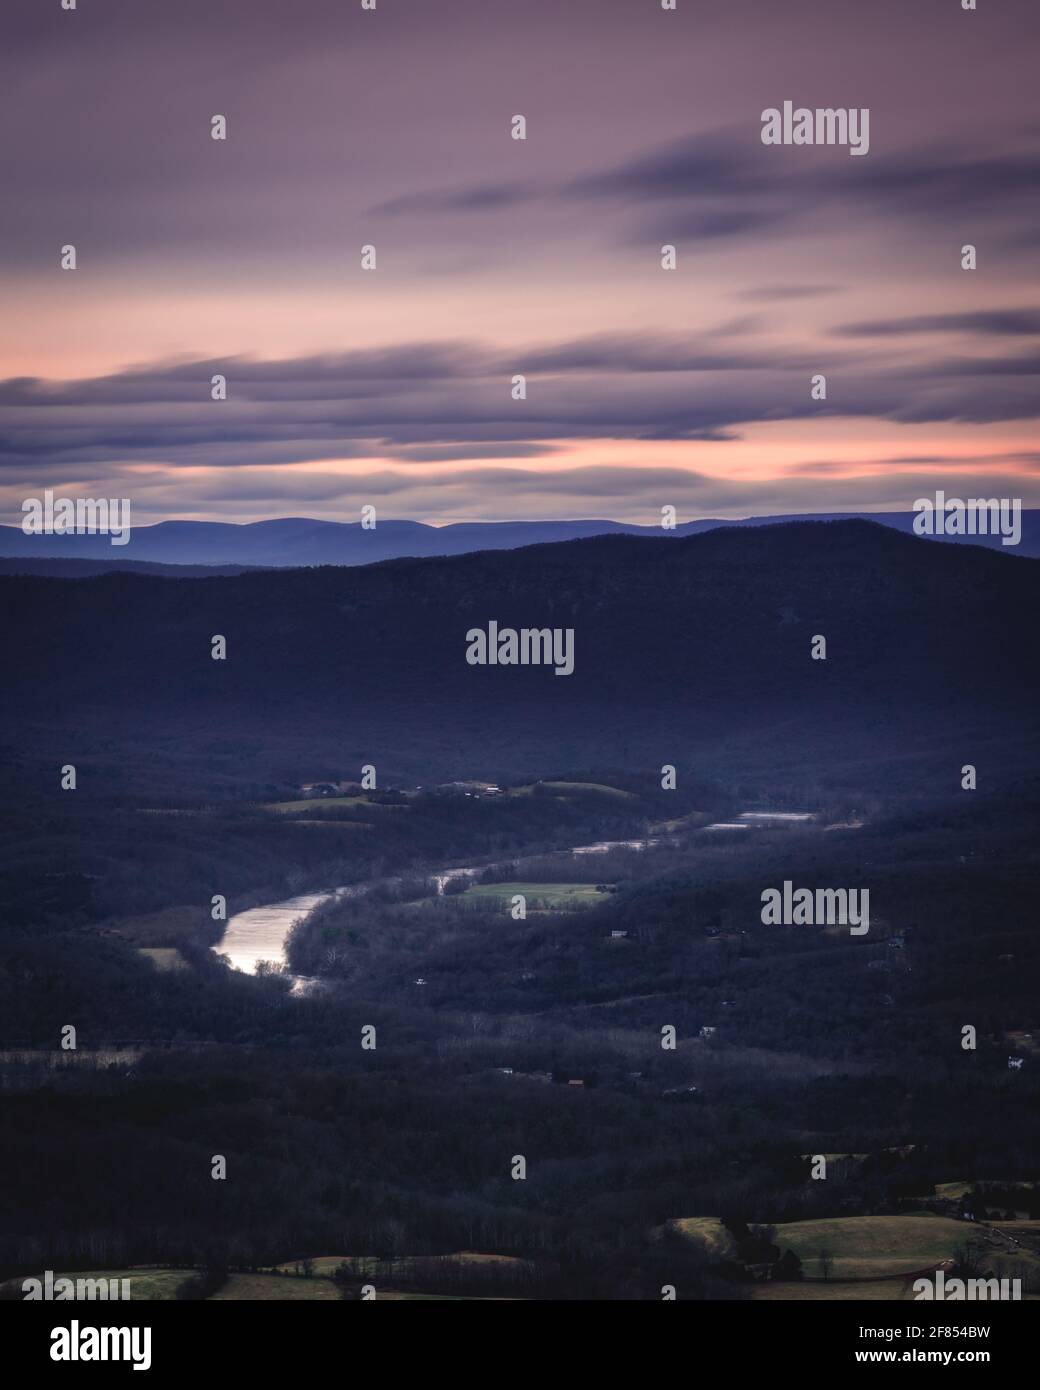 Il fiume Shenandoah serpeggia attraverso la Shenandoah Valley in Virginia, vista da Skyline Drive al tramonto. Foto Stock